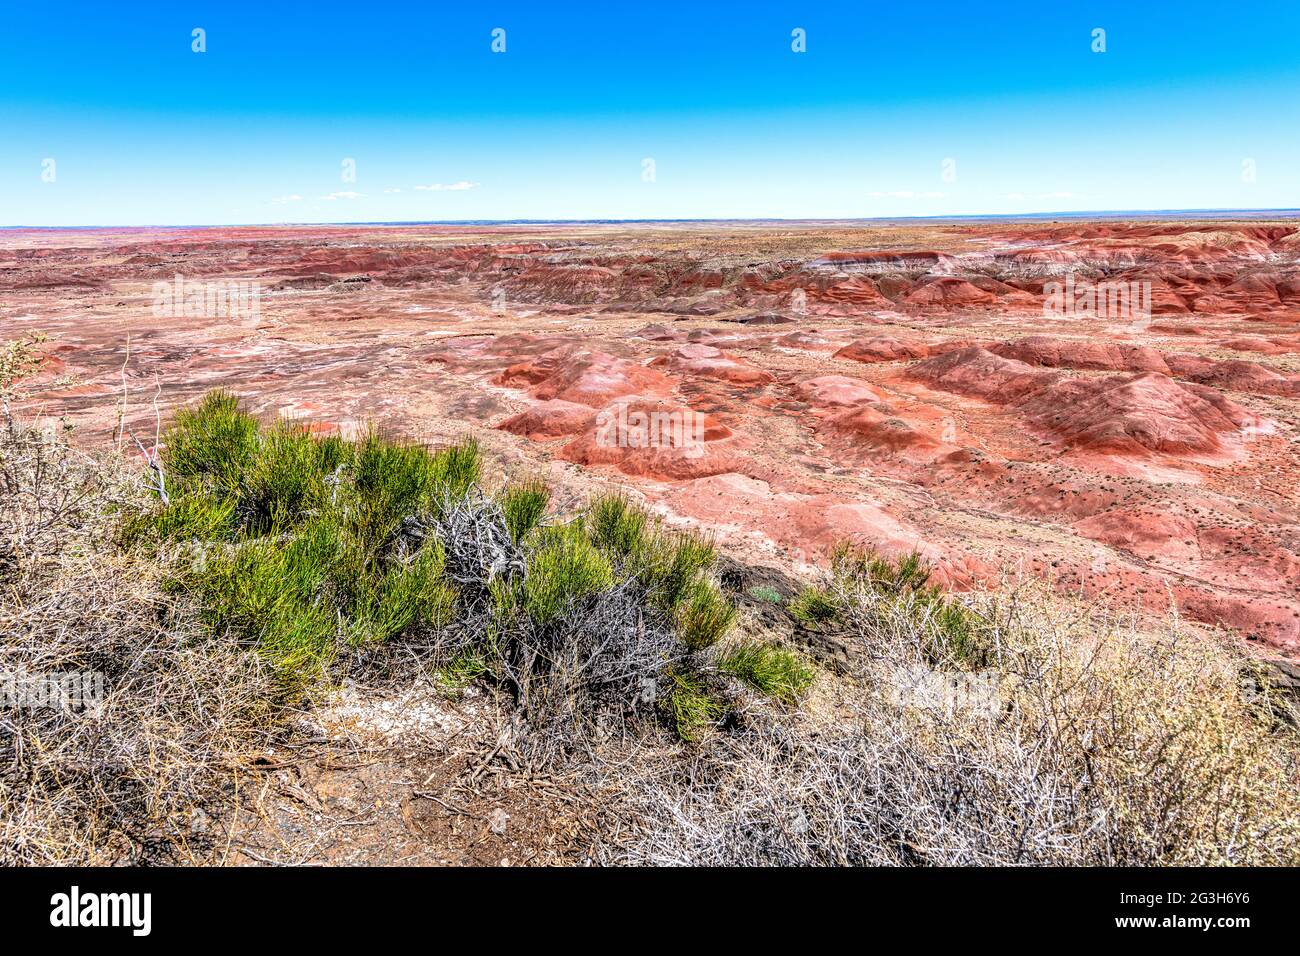 Panoramablick auf die Berge des Painted Desert National Park zeigt die wunderschöne geologische Formation, Muster und Farben, die diesem Park seinen Namen geben. Stockfoto